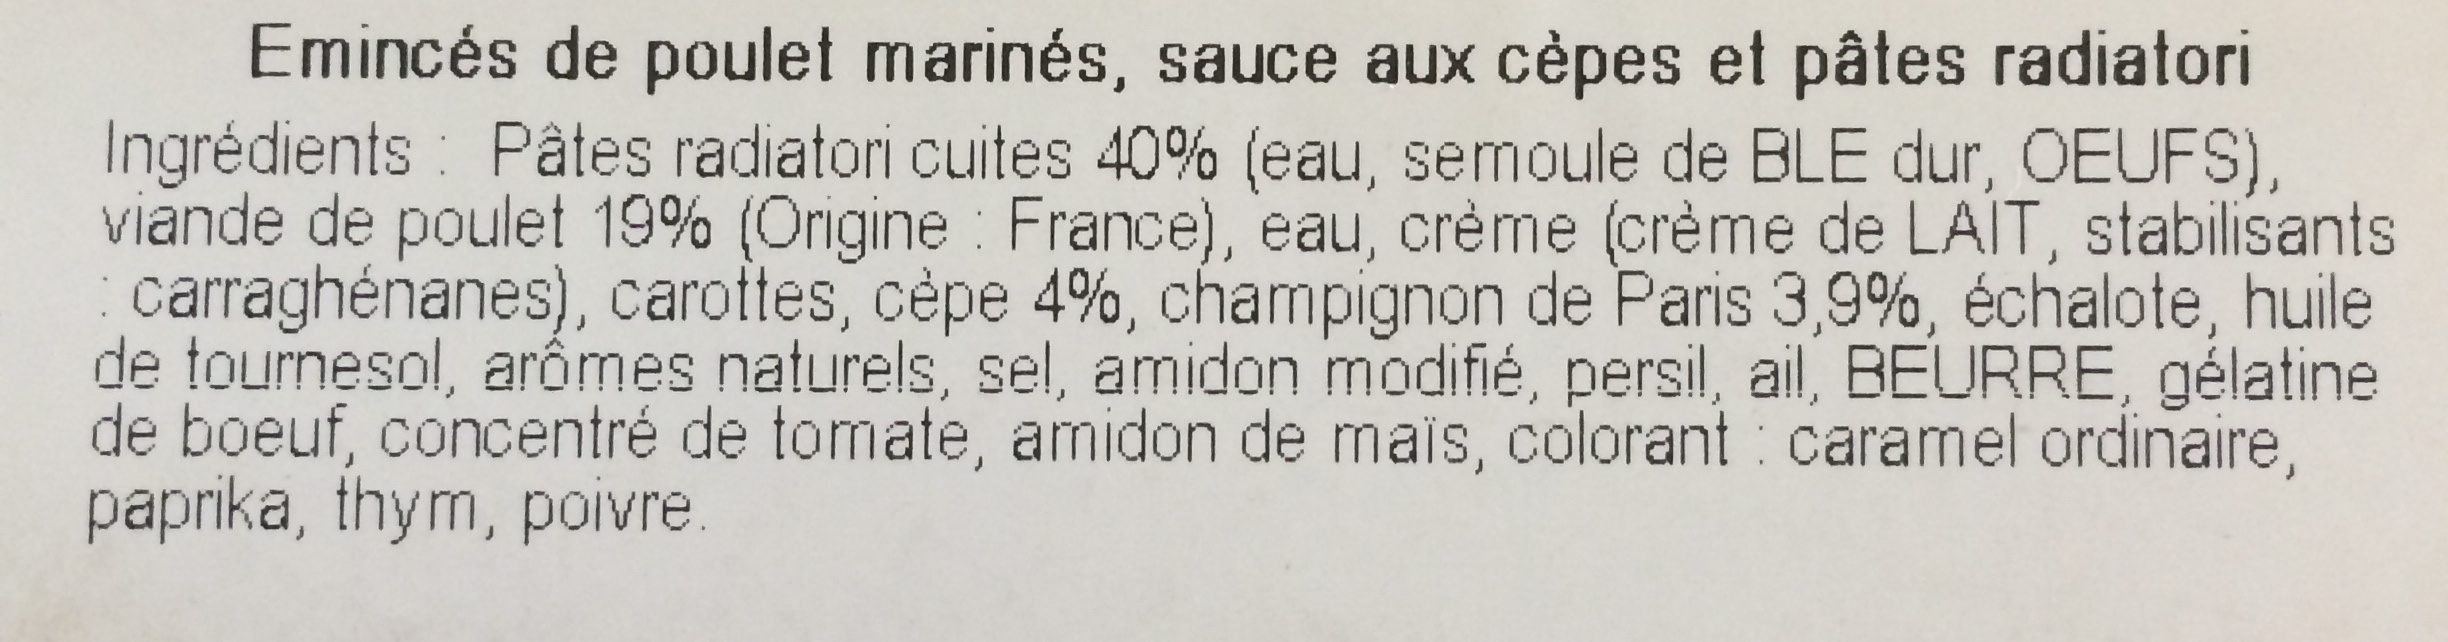 Poulet marine sauce aux cèpes - Ingredientes - fr